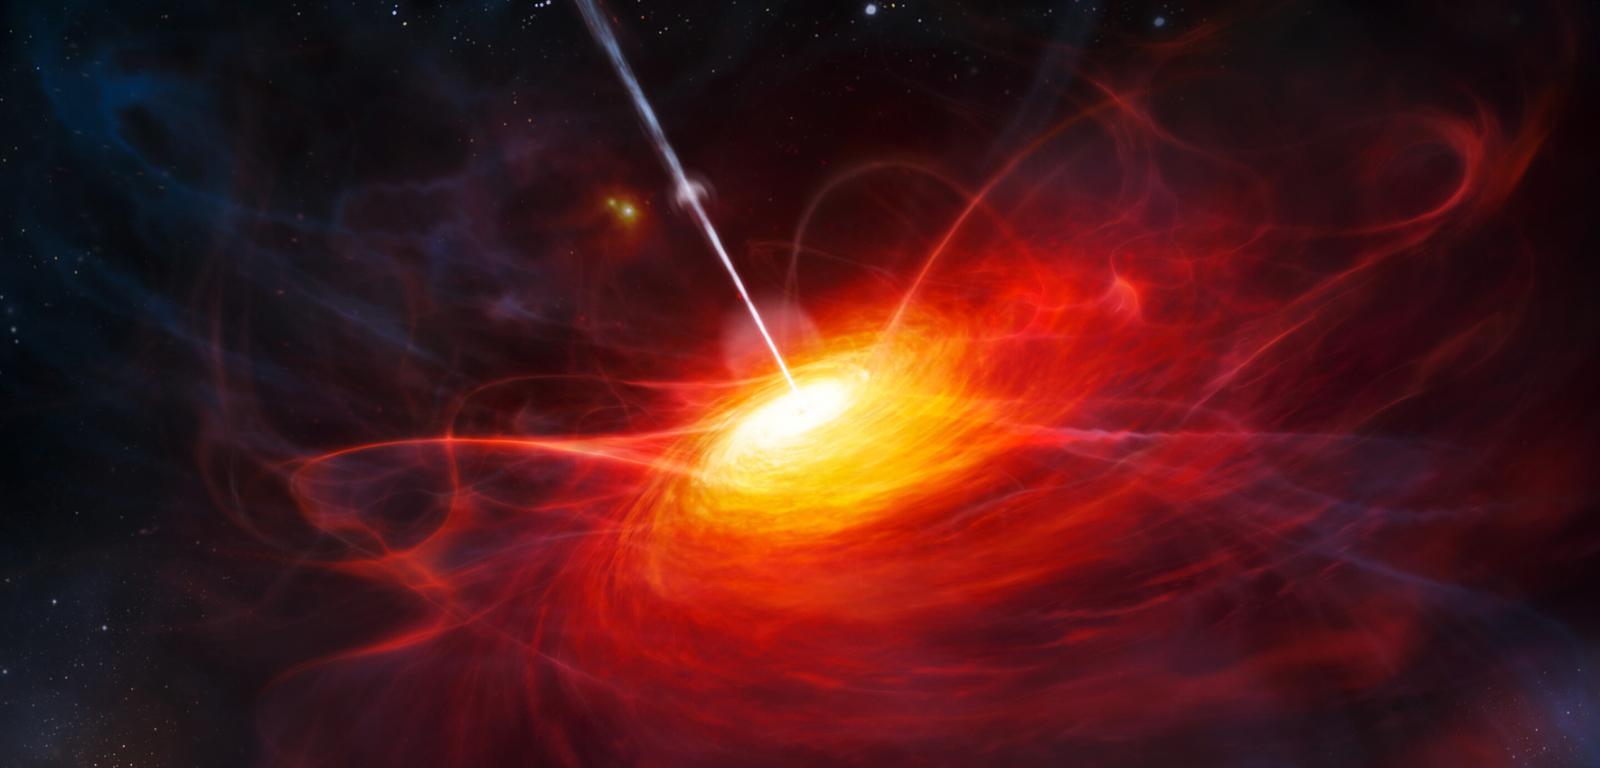 Wizja artystyczna dysku akrecyjnego w ULAS J1120+0641, bardzo odległym kwazarze zasilanym przez supermasywną czarną dziurę o masie dwa miliardy razy większej od Słońca.